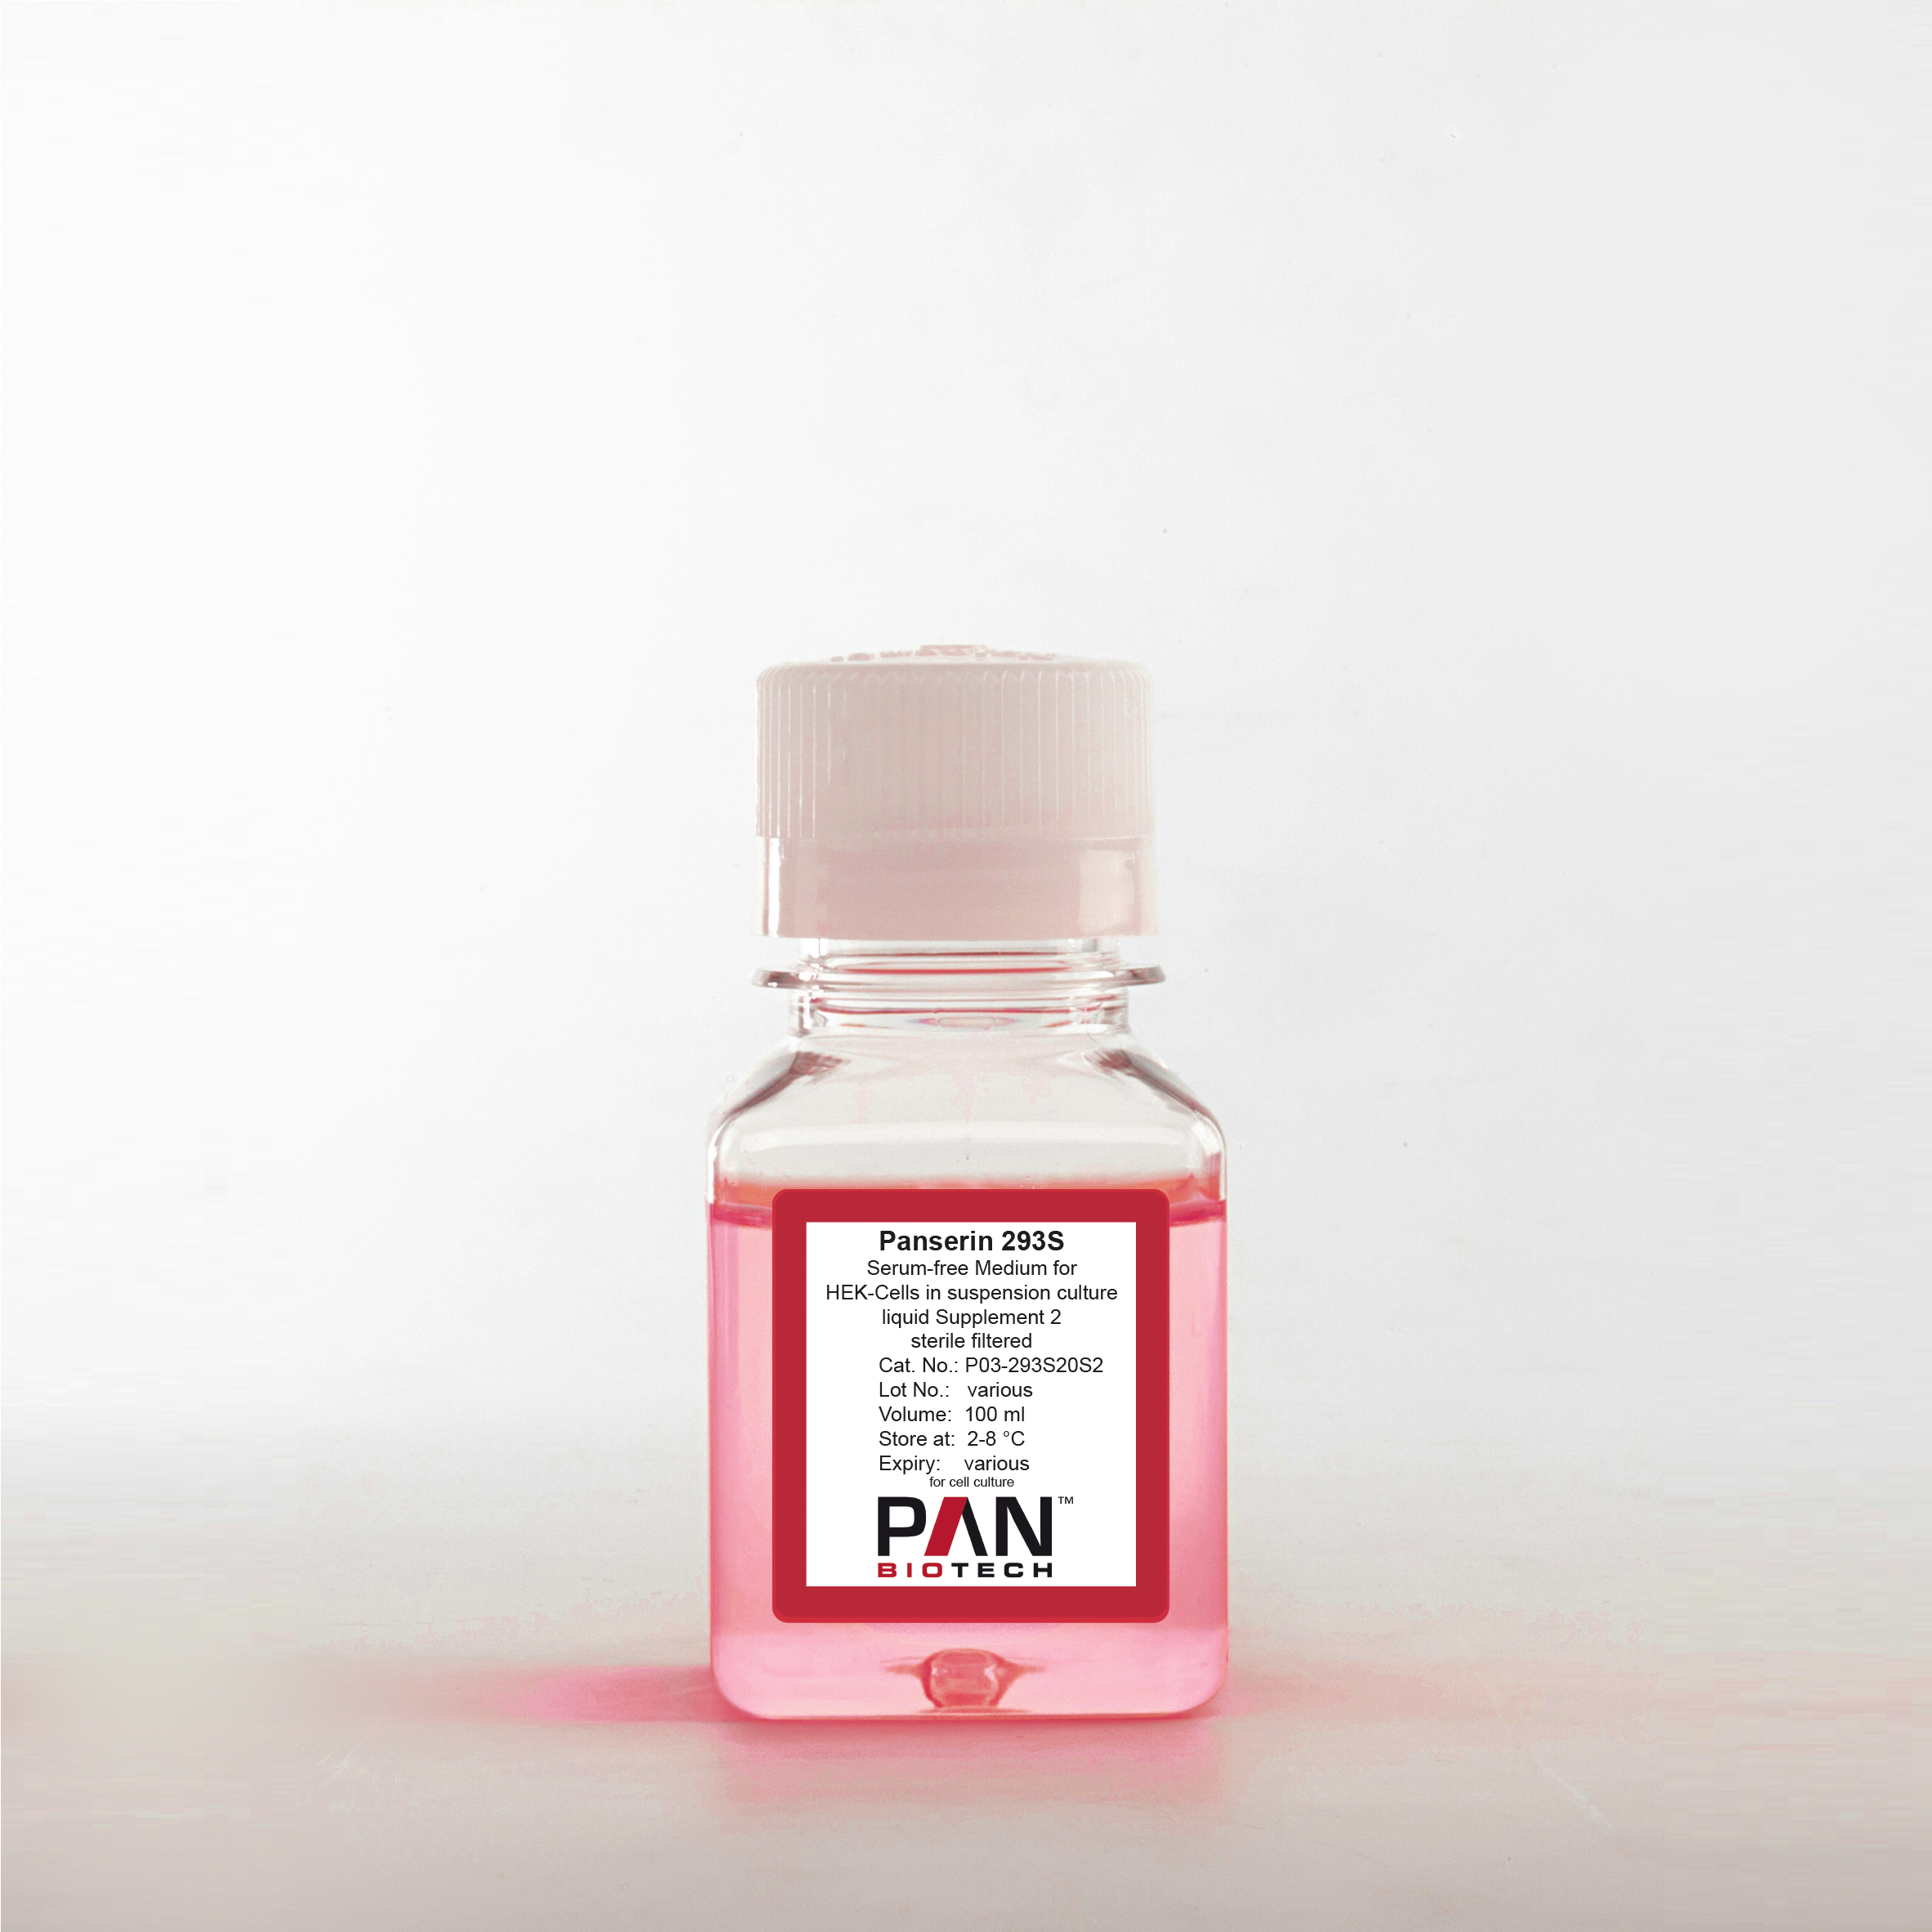 Panserin 293S, Serum-free medium for HEK-Cells in suspension culture, liquid Supplement 2